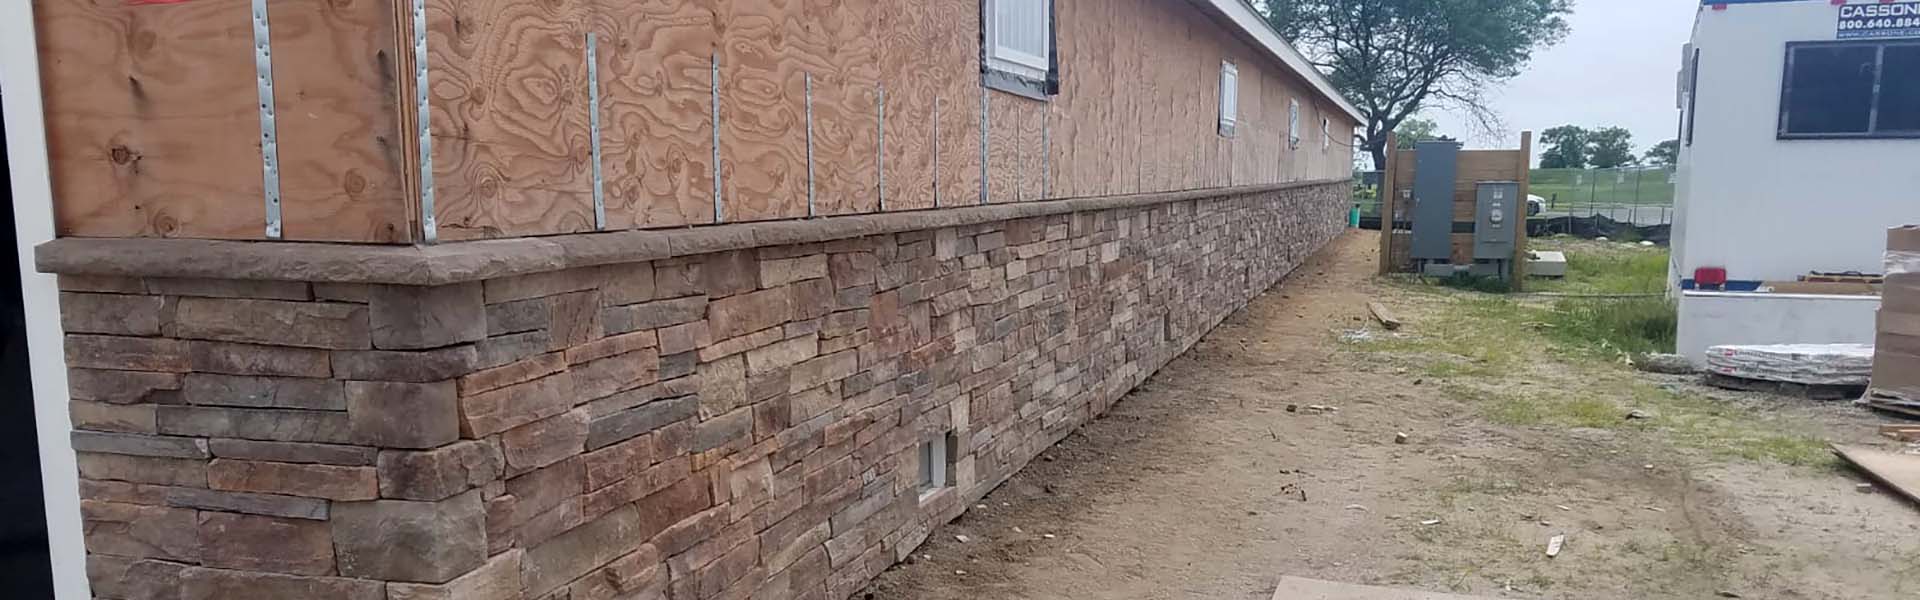 Rock stone brick masonry work